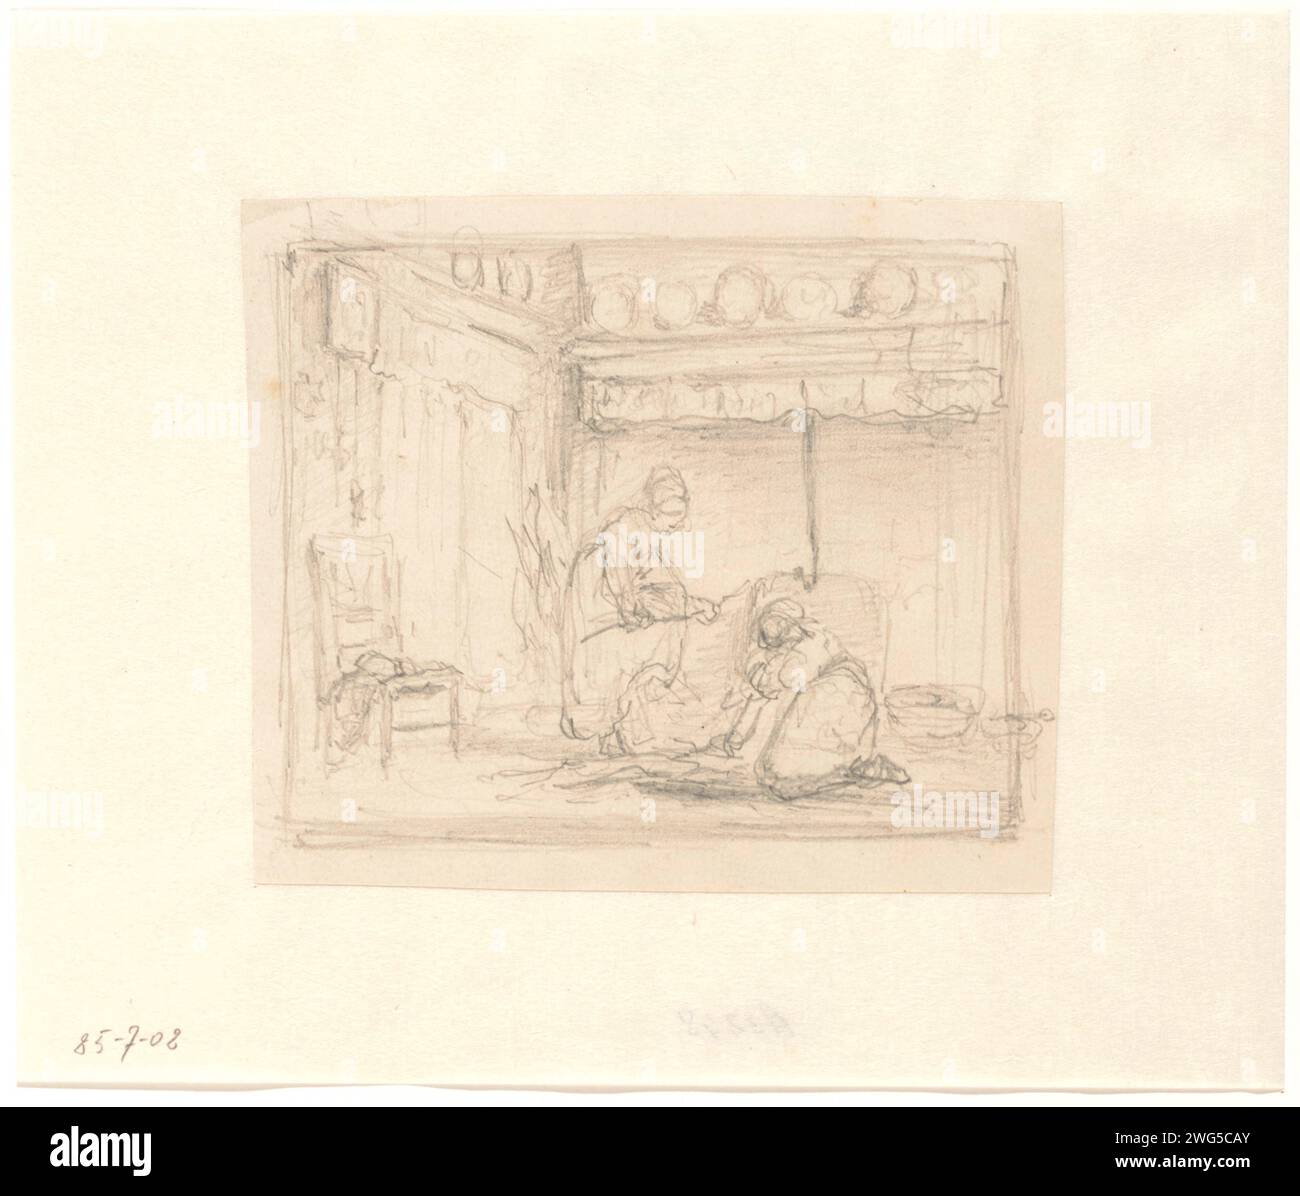 Kücheneinrichtung mit Frauen, Hendrik Valkenburg, 1836 - 1896 Zeichnung Kücheneinrichtung mit Frauen, die Feuer produzieren. Verso: Innenskizze. Papier. Bleistift im Inneren des Hauses. Mutter und Kind(er), Frau und Kind(er) (Familiengruppe) Stockfoto